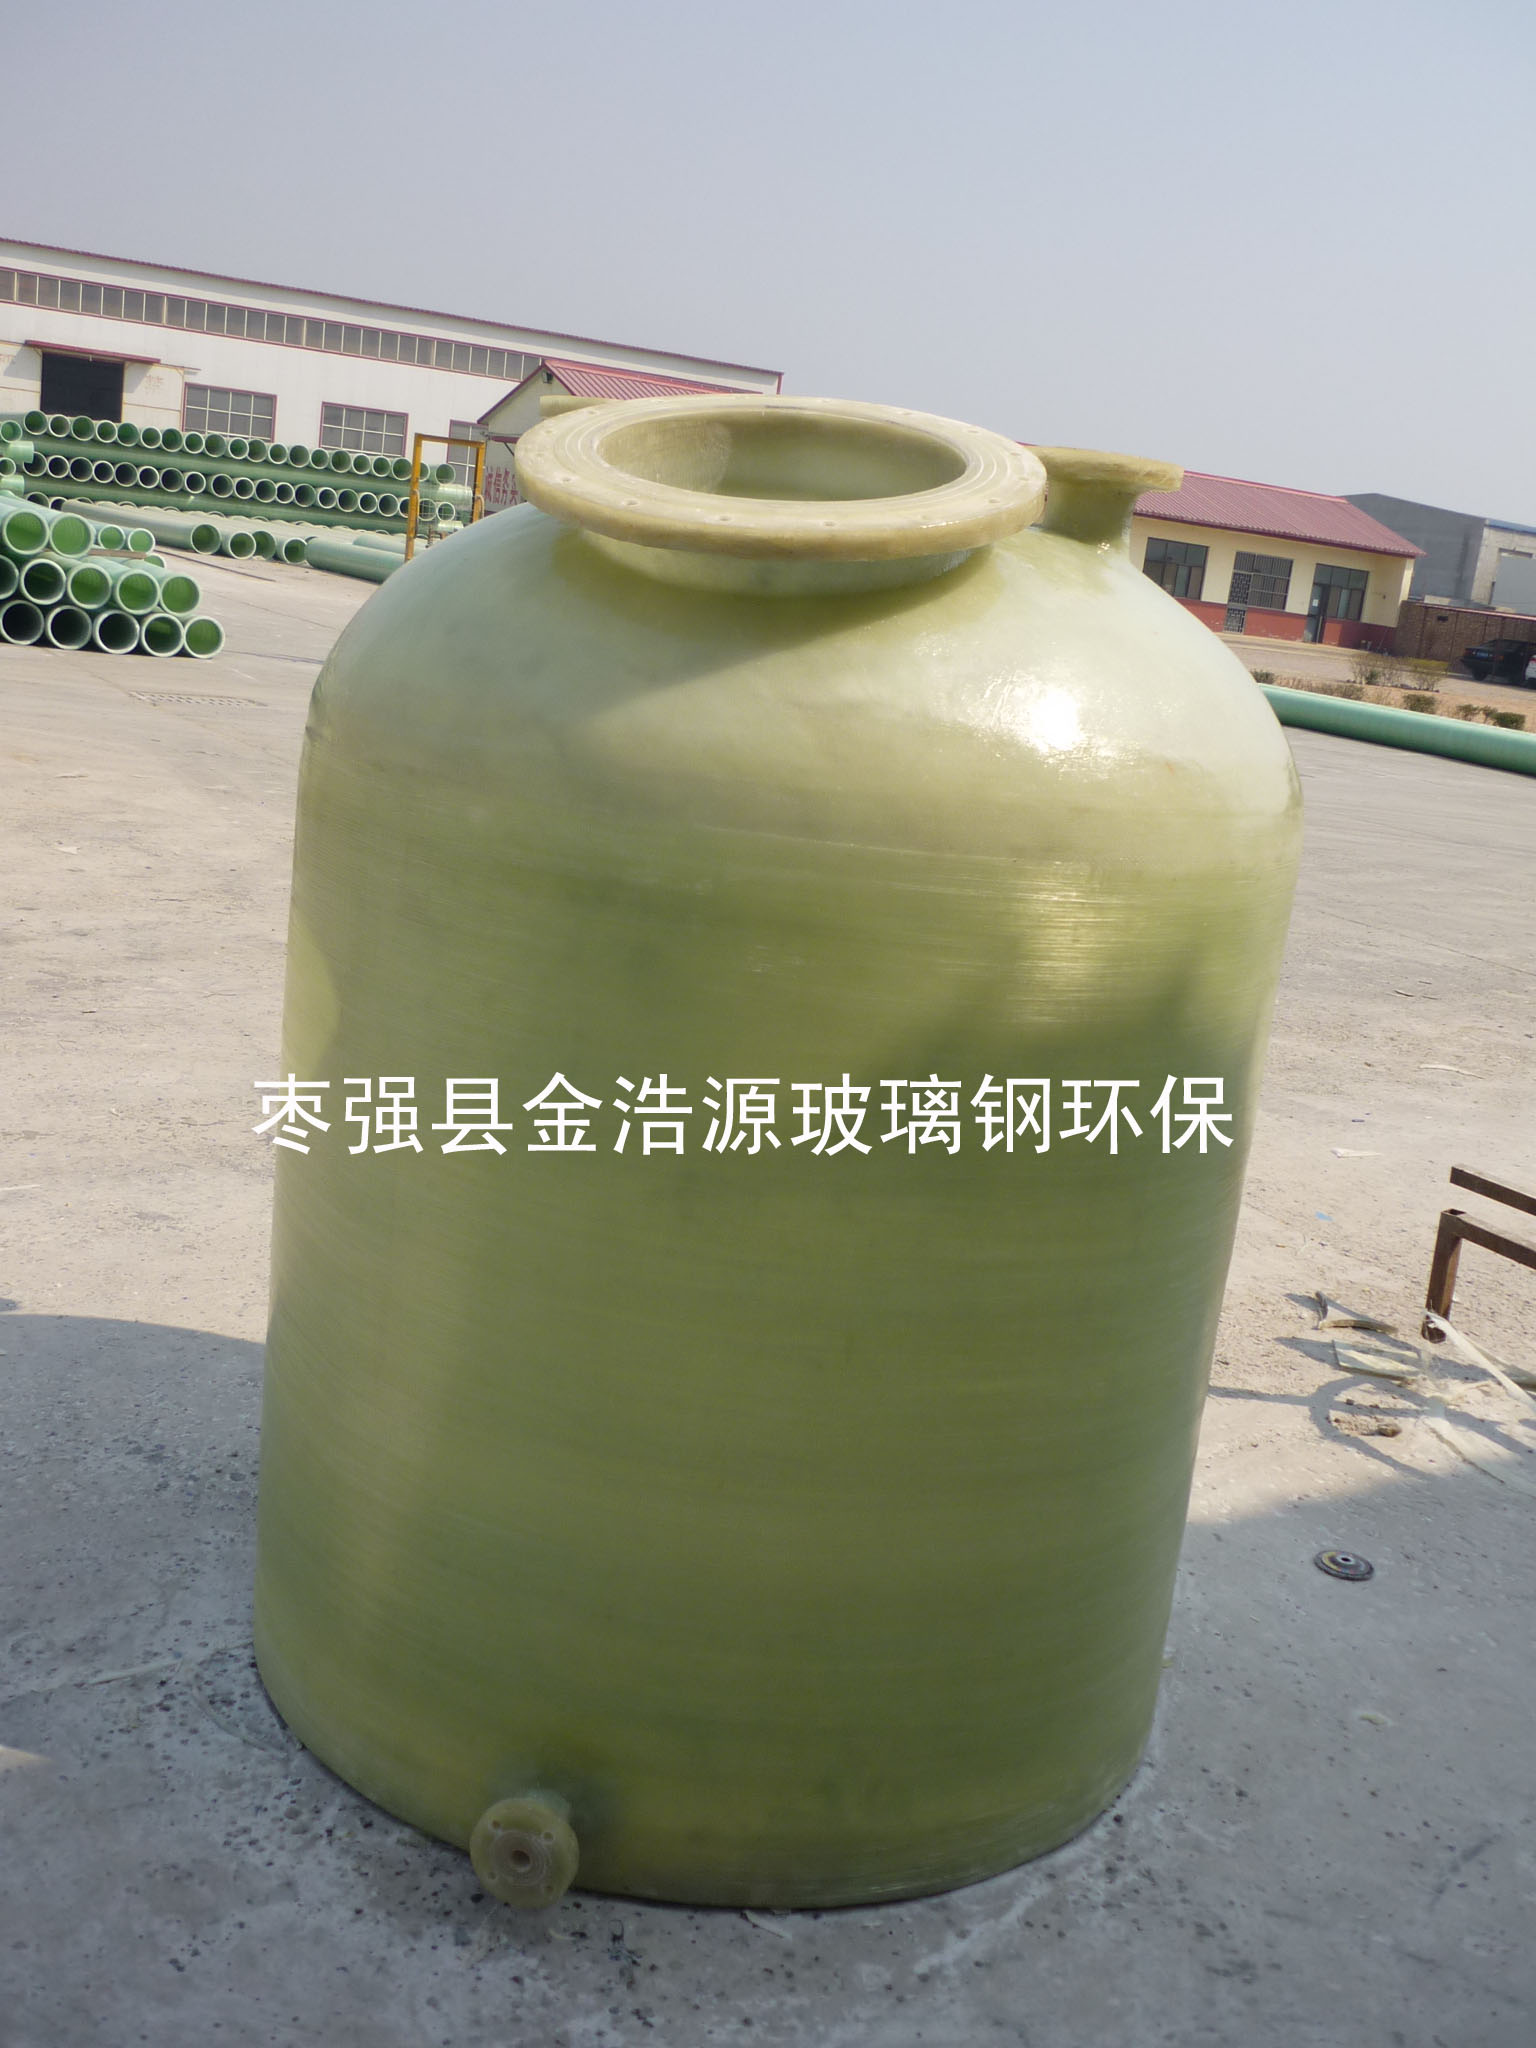 供应软化水用树脂罐 玻璃钢树脂罐 活性炭过滤罐,石英砂过滤罐 各规格型号玻璃钢罐体